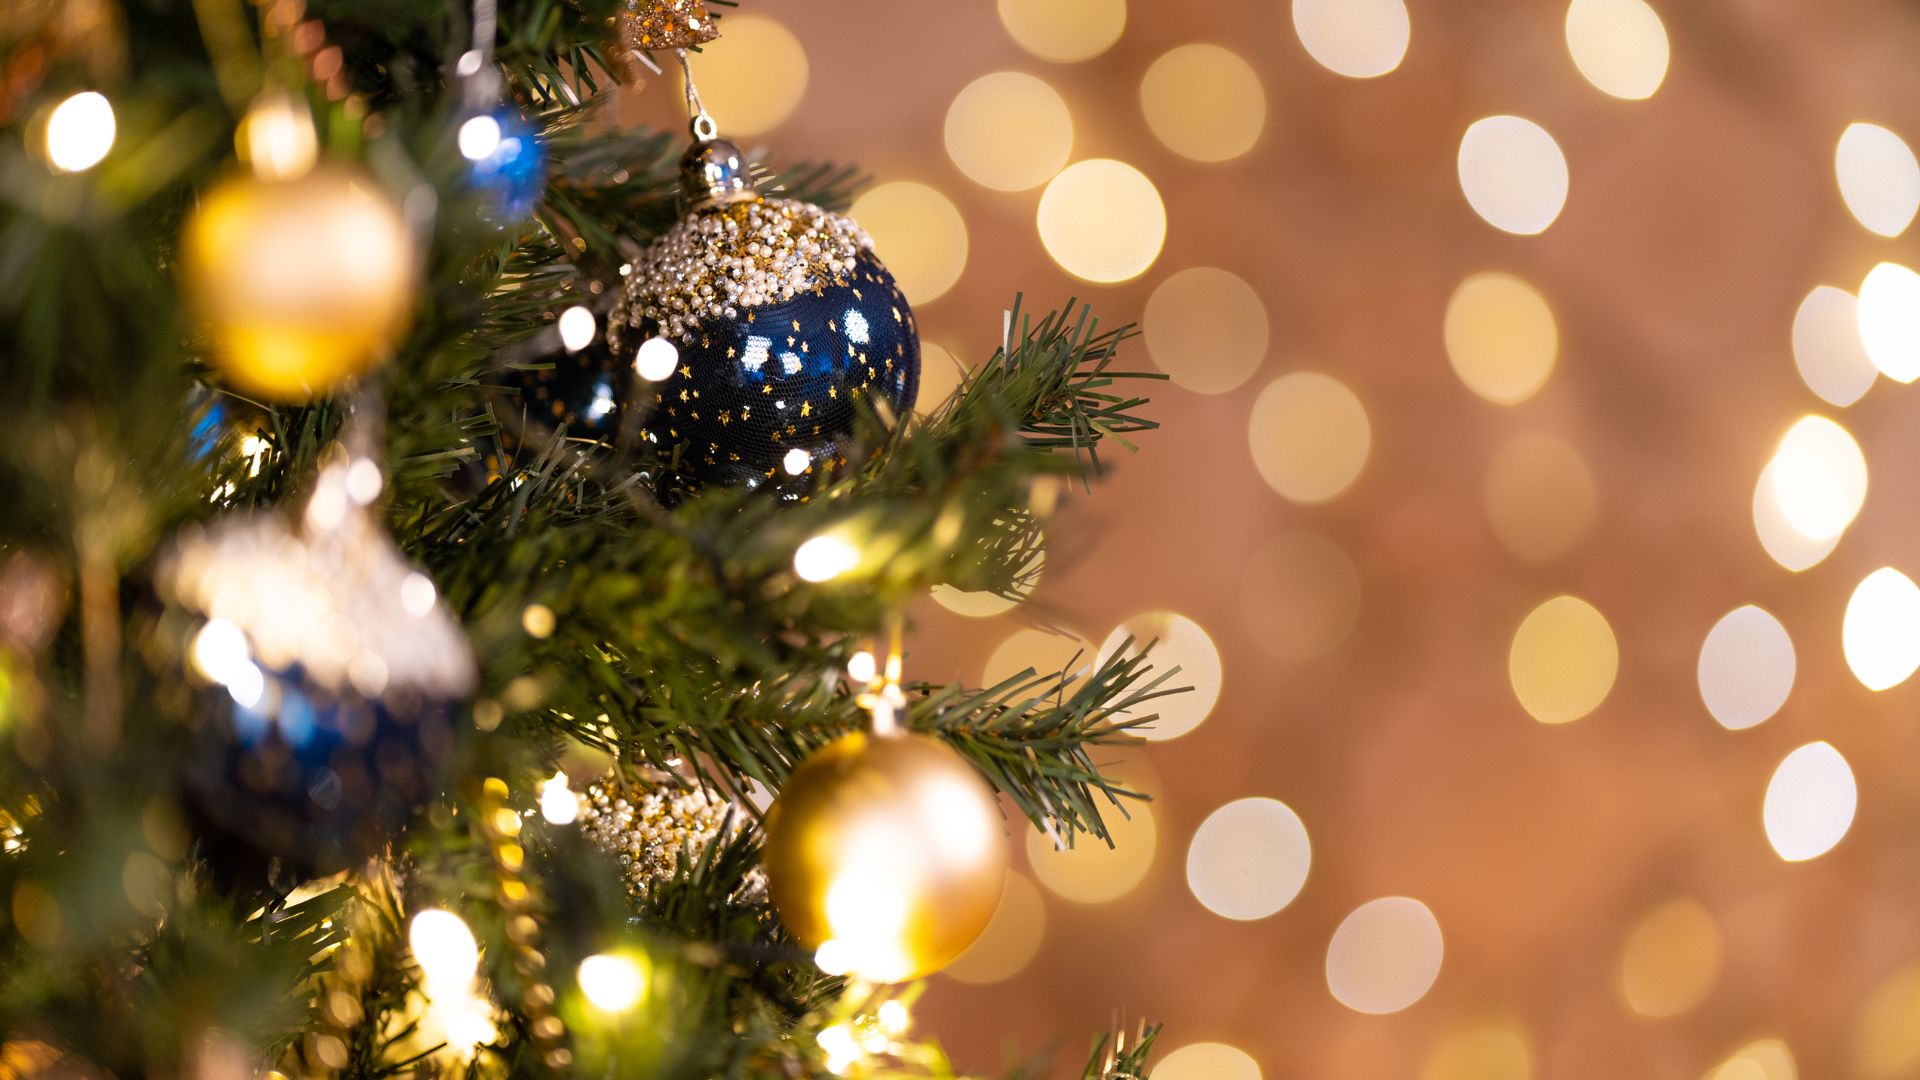 Imagem de fundo dourado. Do lado esquerdo da tela, um galho de árvore de natal decorado com bolas azuis e douradas.